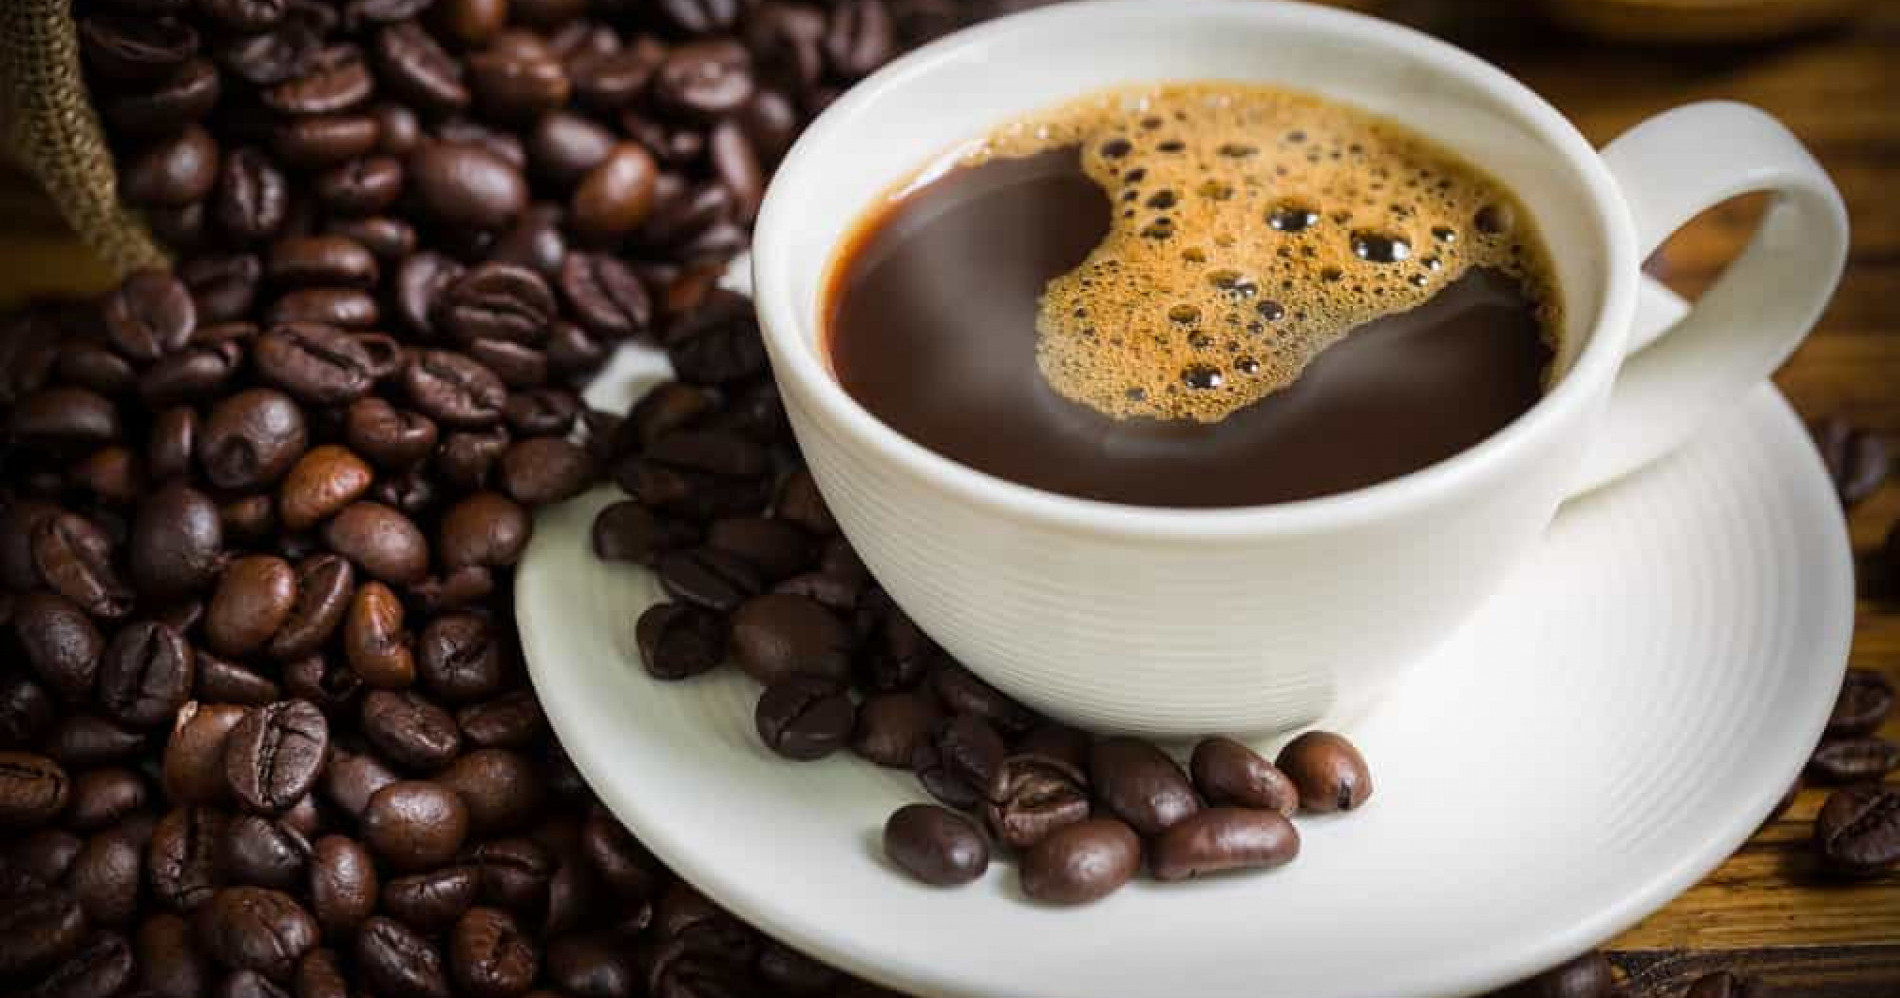 Berbahaya minum kopi setiap hari (Sumber: hellosehat.com)